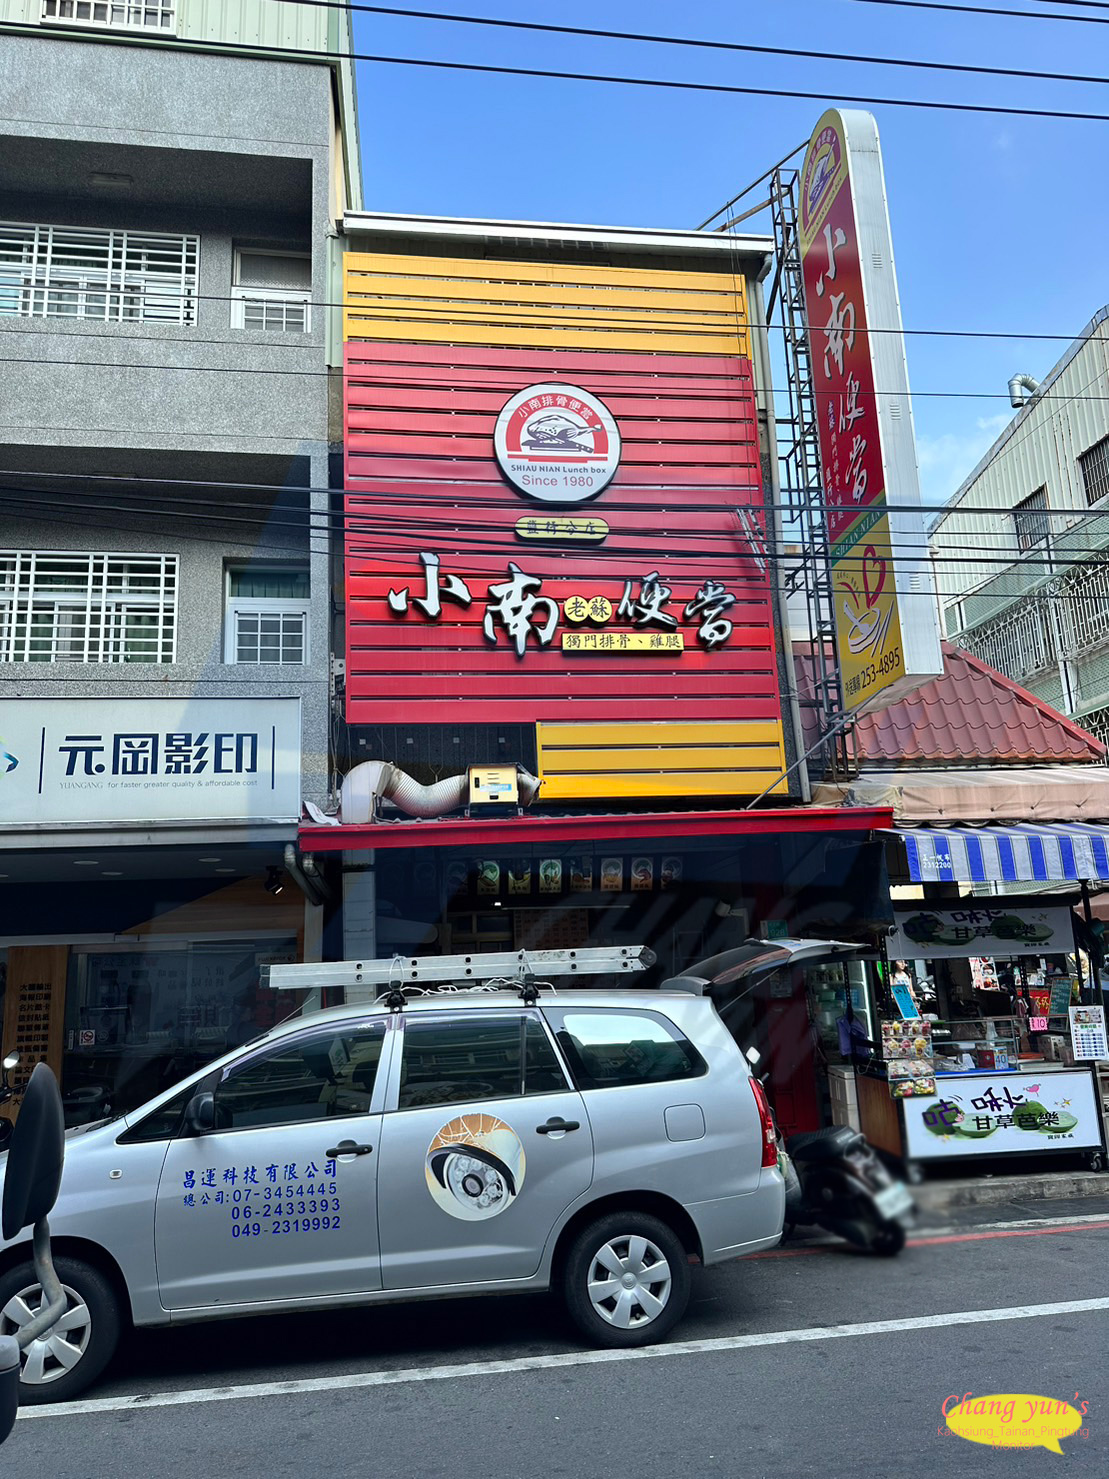 台南市永康區監視器安裝案例 監視系統推薦安裝廠商